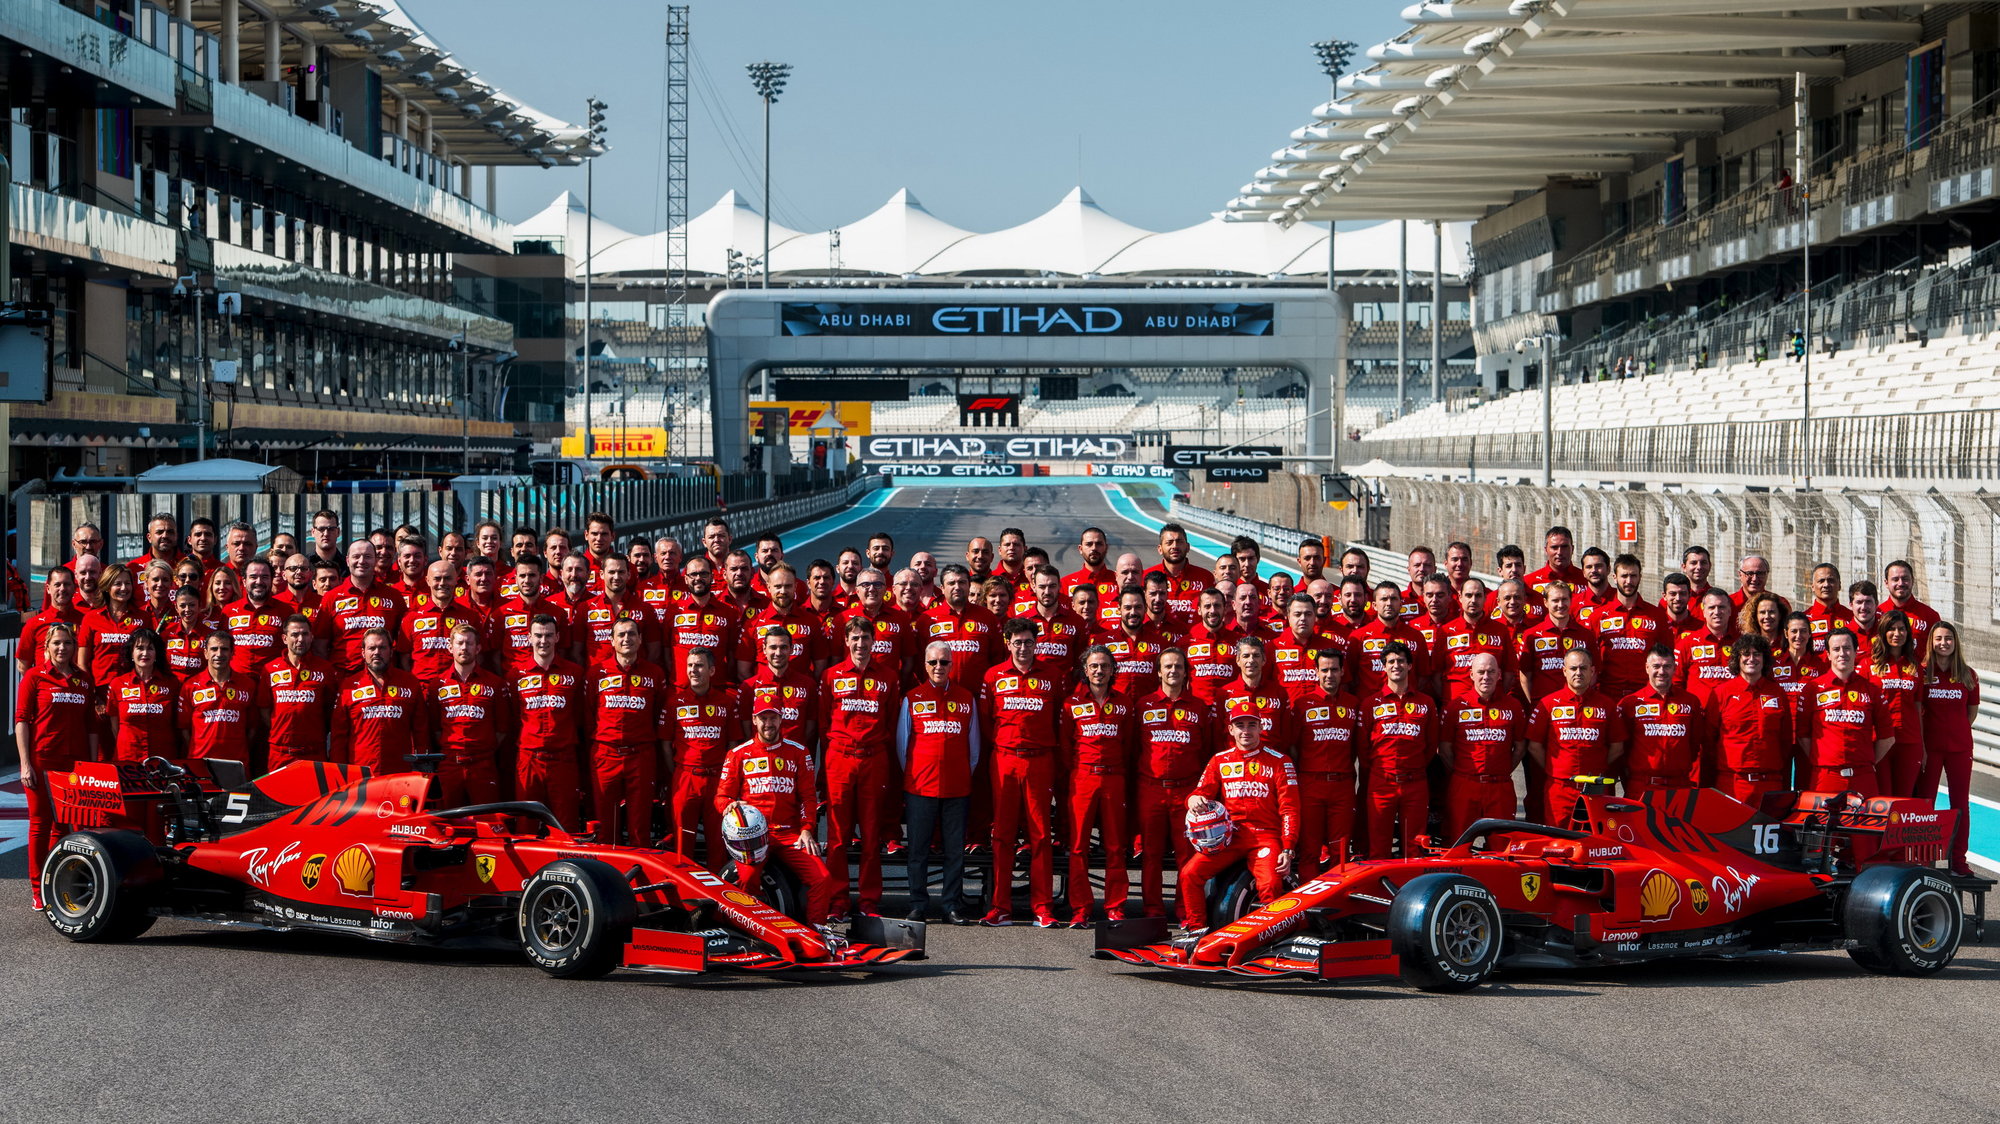 Skupinové foto Ferrari před posledním závodem sezóny 2019